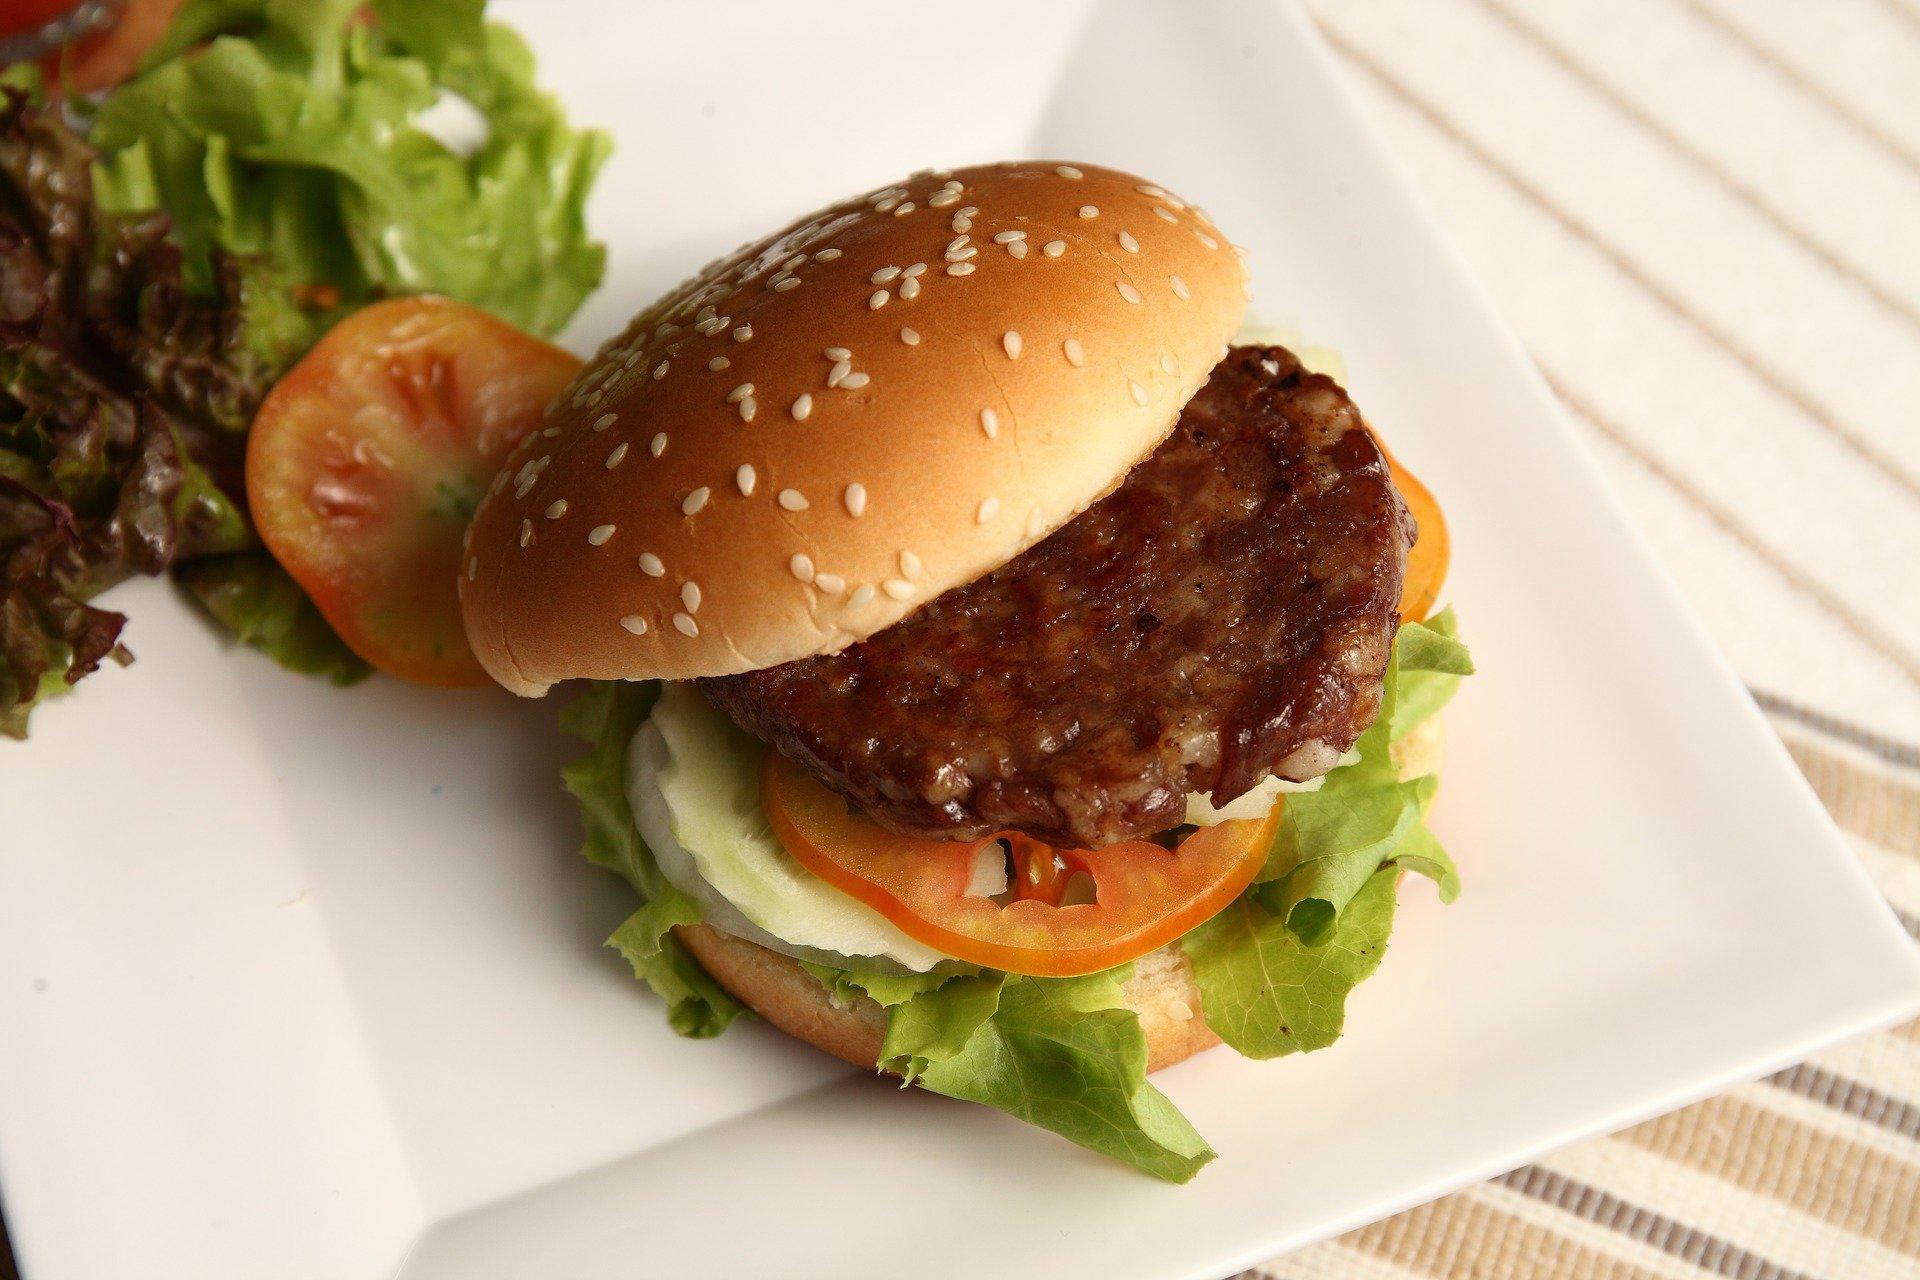 Imagem mostra foto de hambúrguer